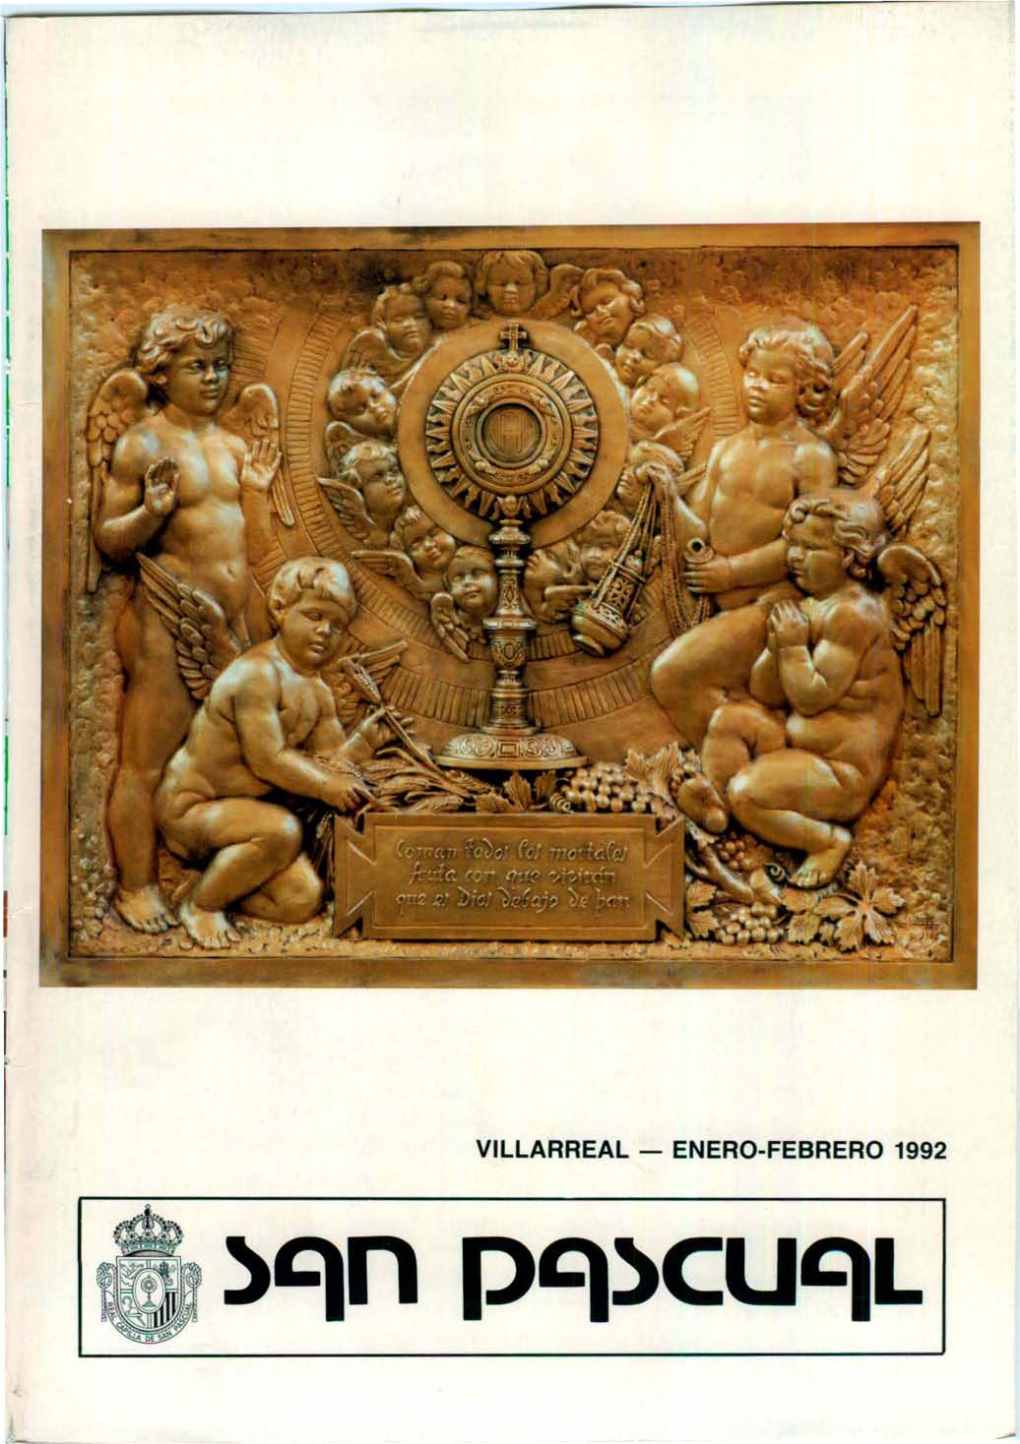 Villarreal - Enero-Febrero 1992